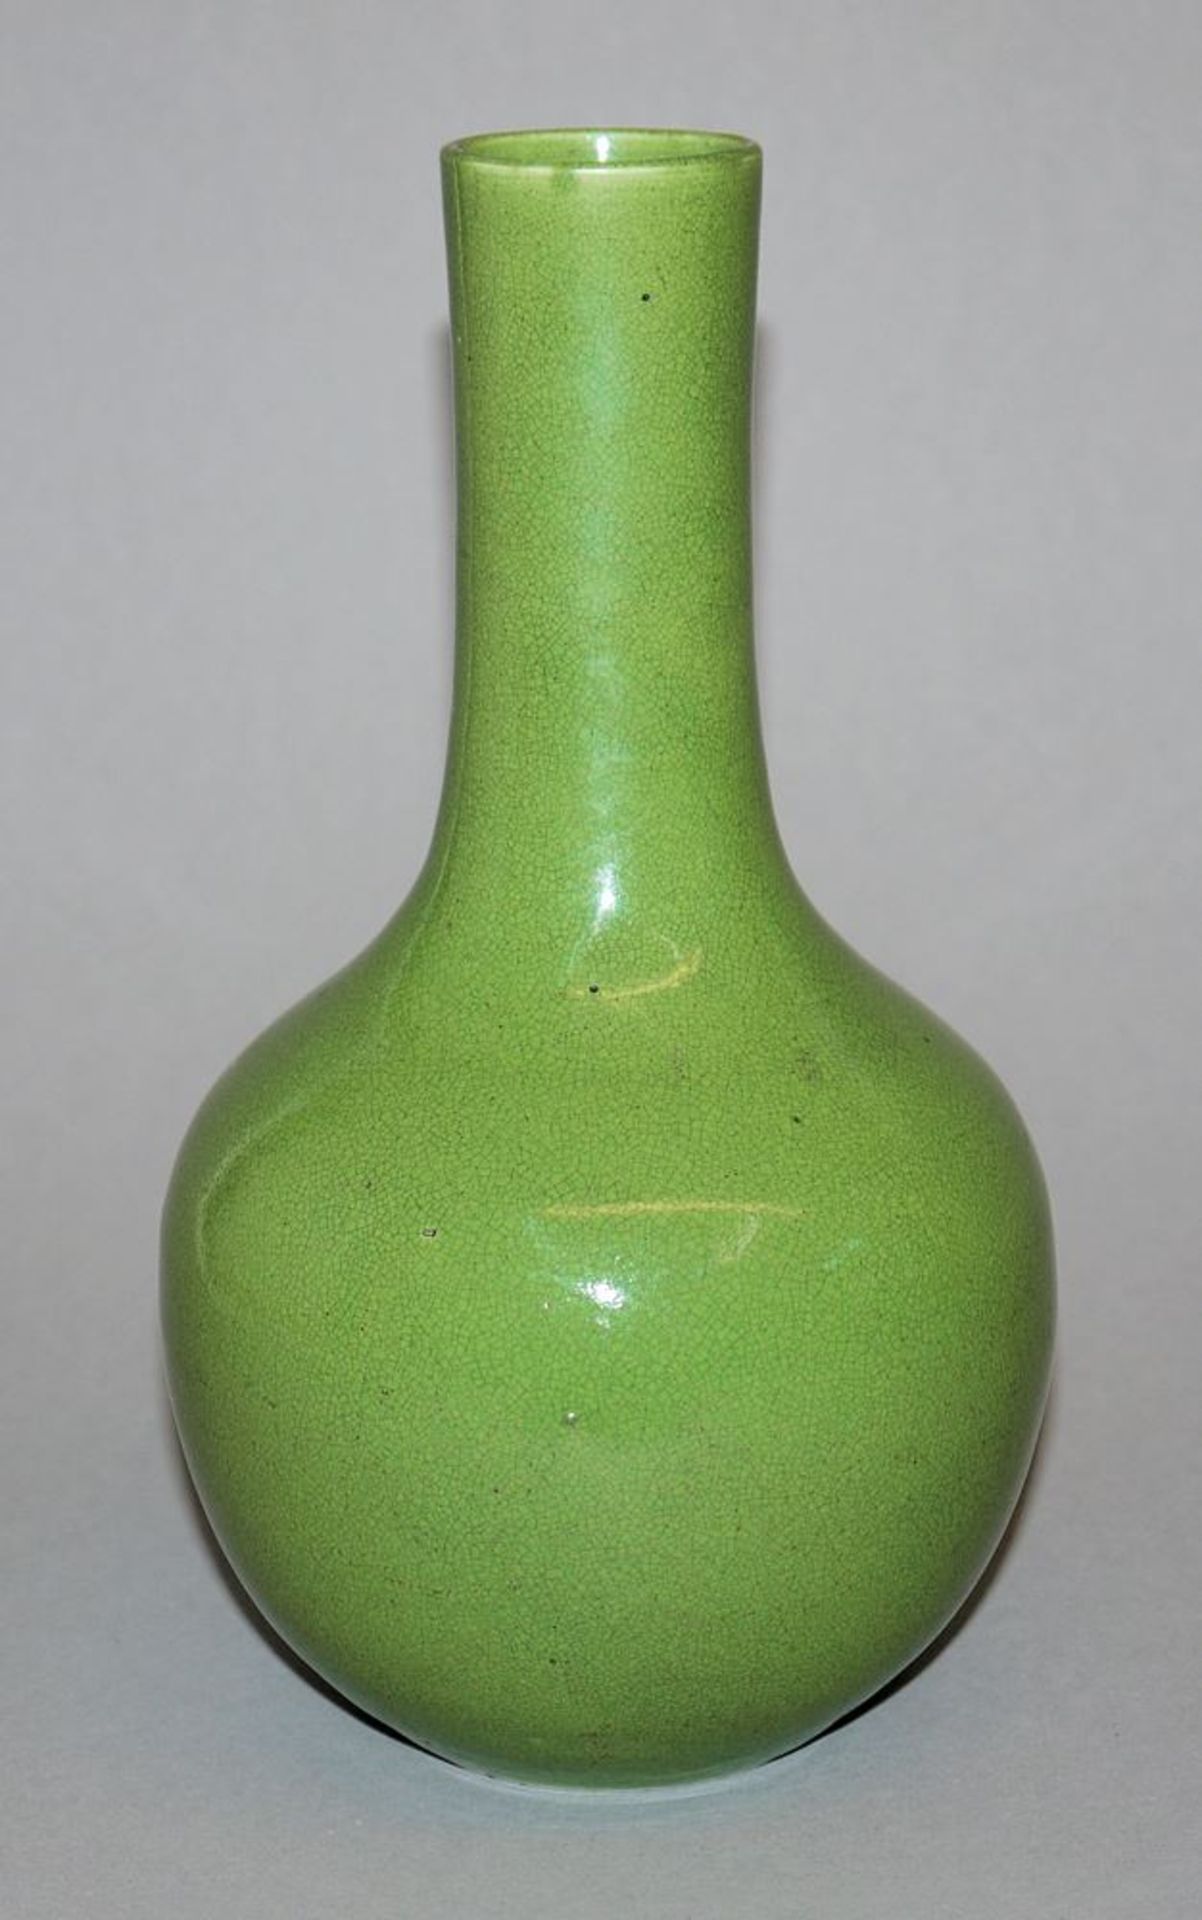 Tianqiuping-Vase mit apfelgrüner Craquelé-Glasur, Qing-Zeit, China 18./19. Jh.